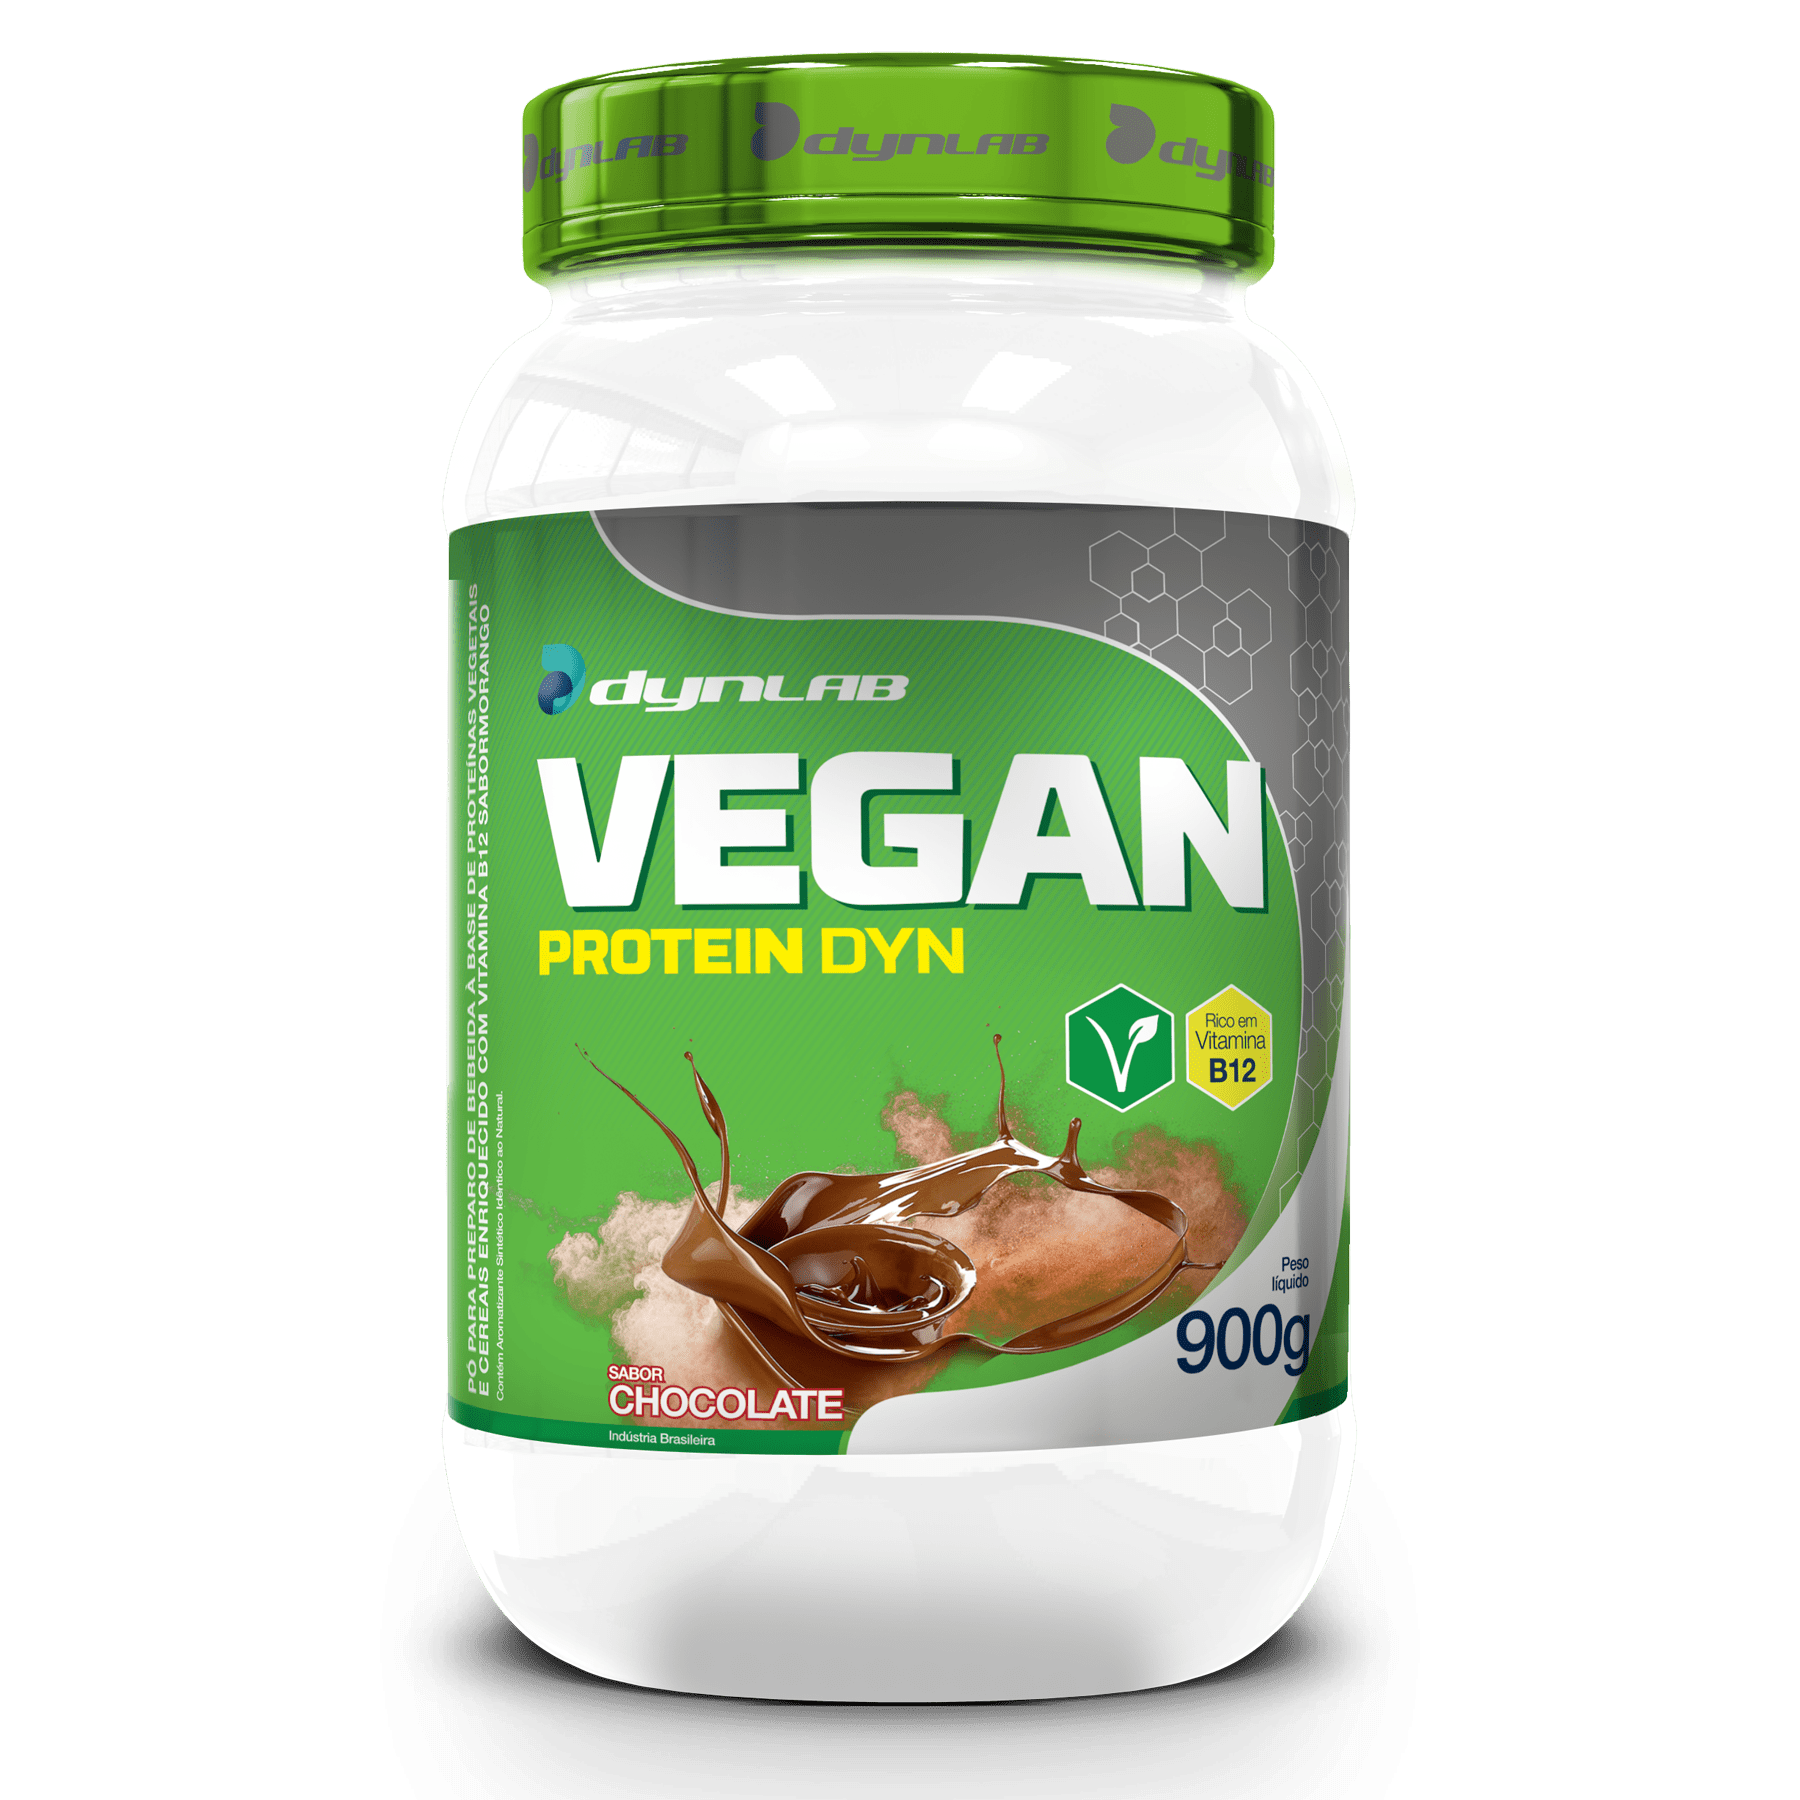 Vegan Protein Dyn - Dynlab